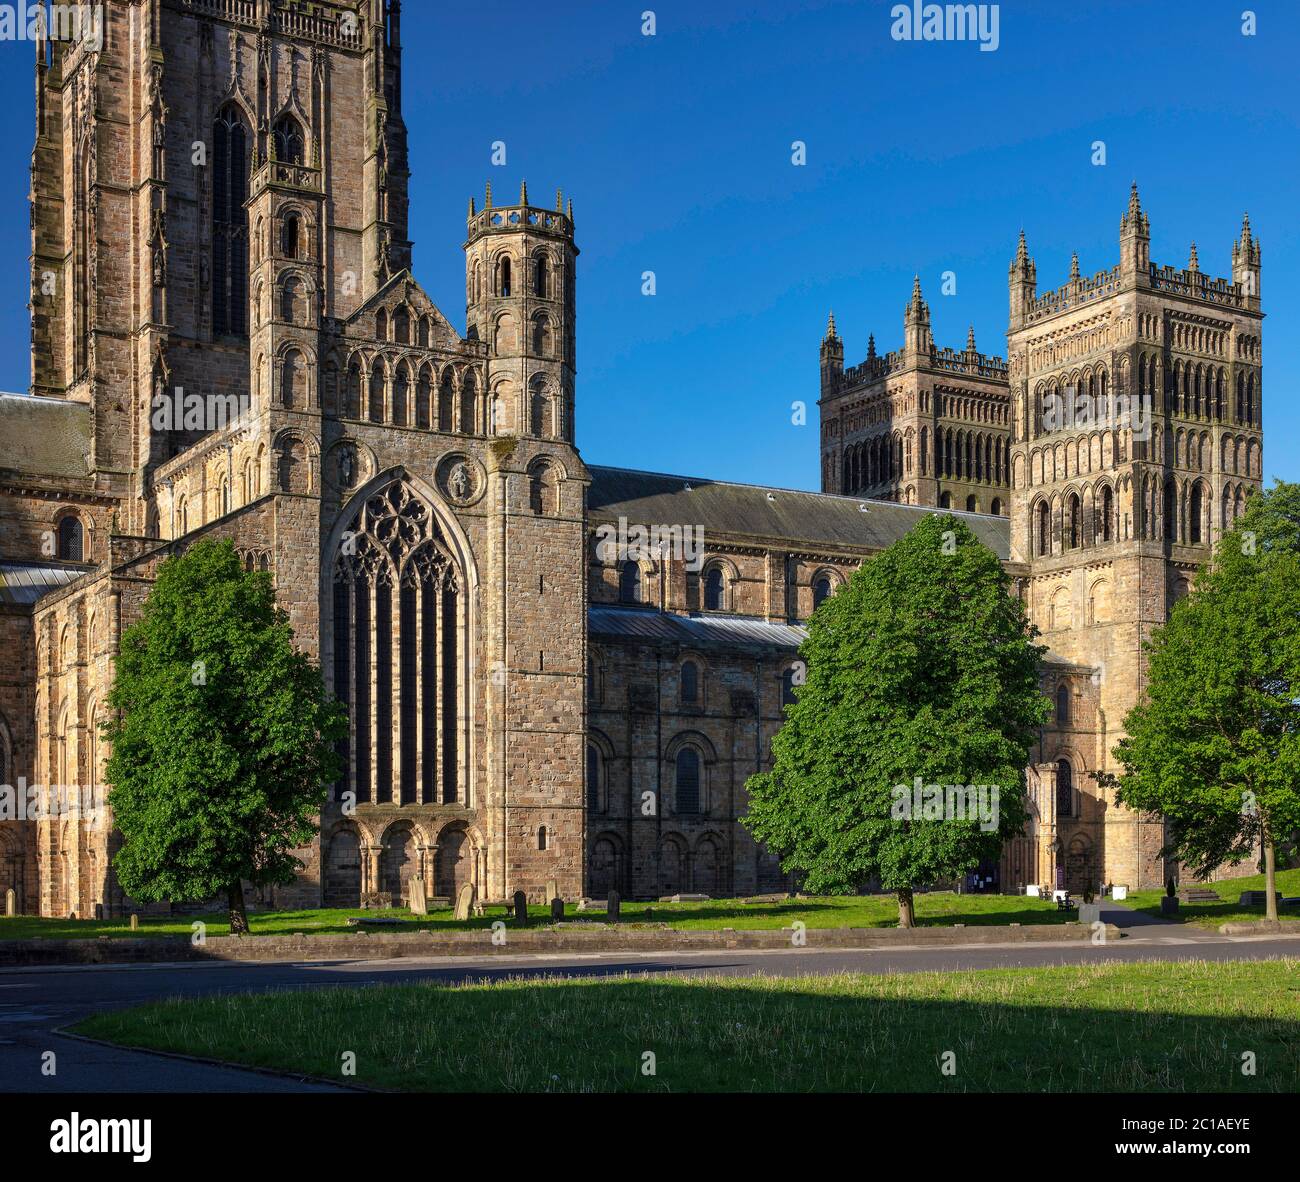 Vista de la Catedral de Durham en verano desde el Palace Green, la ciudad de Durham, condado de Durham, inglaterra, Reino Unido Foto de stock